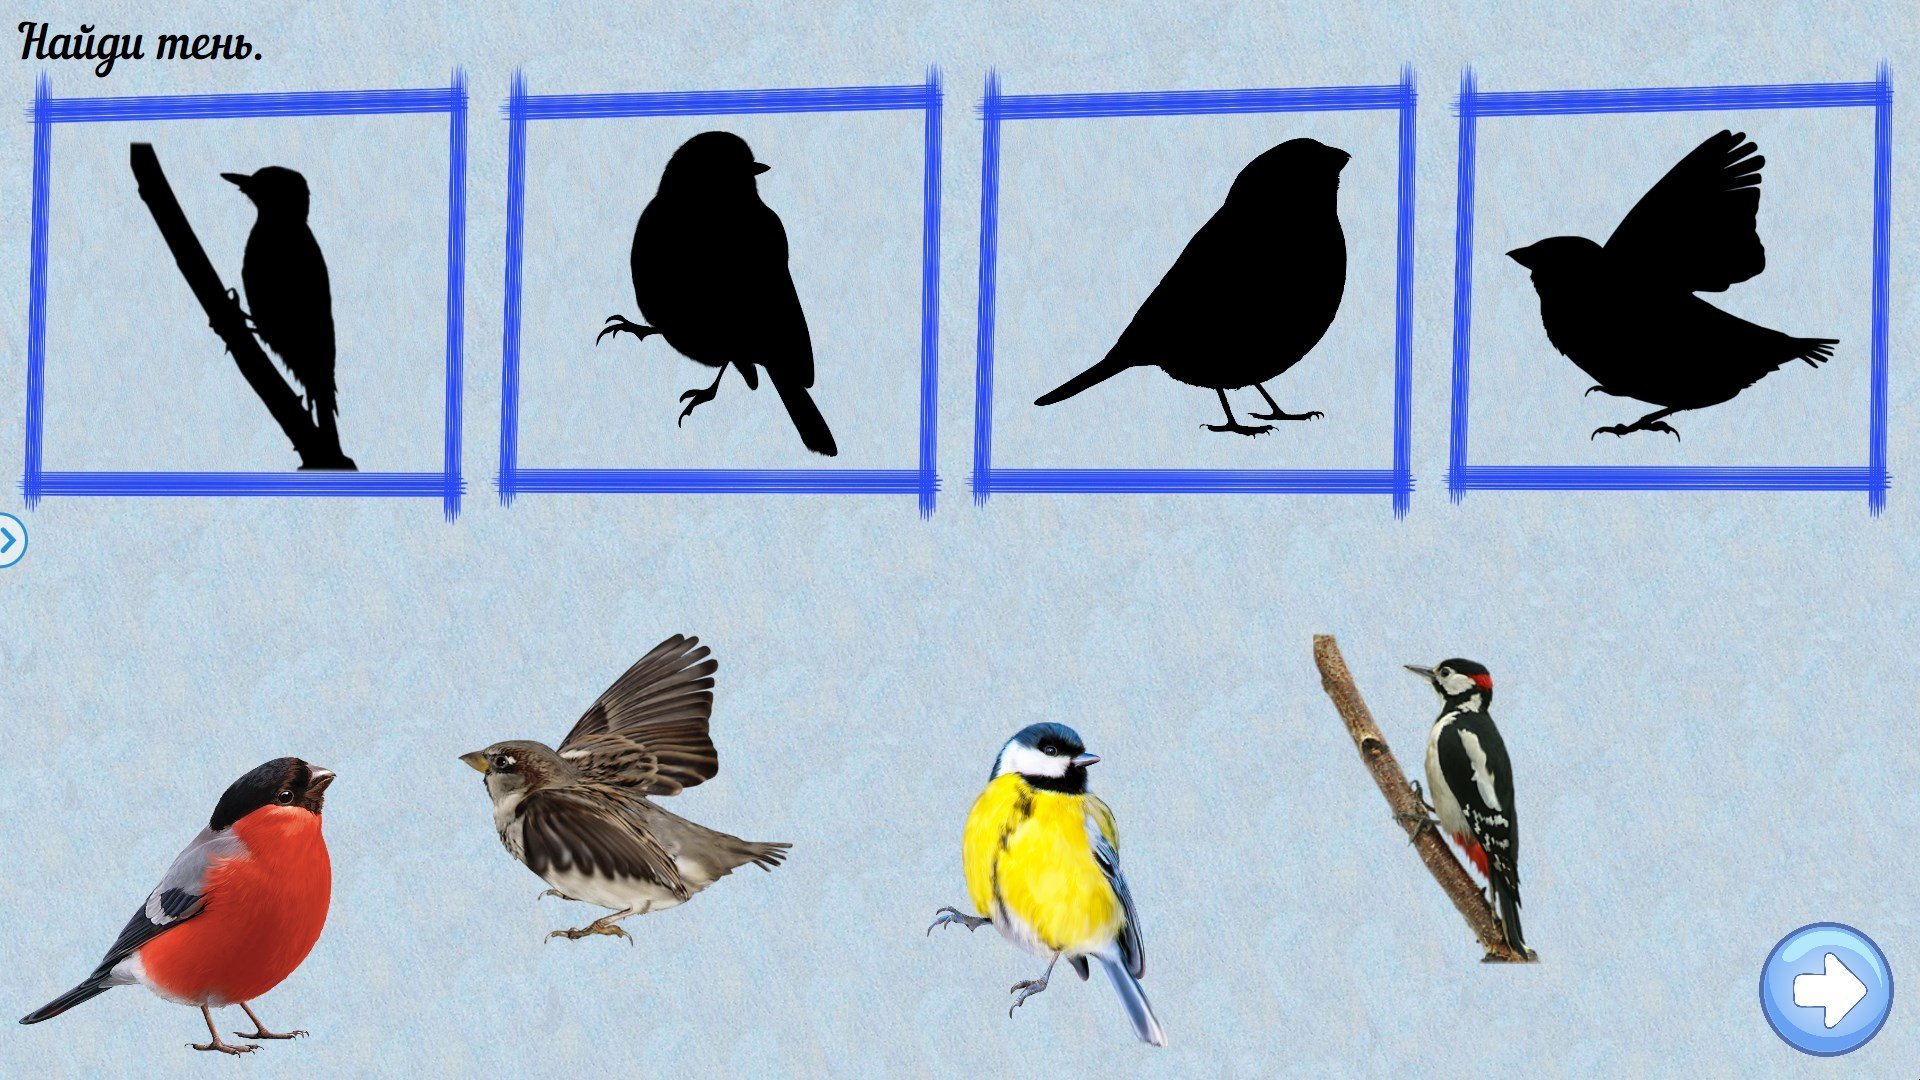 Познание птицы